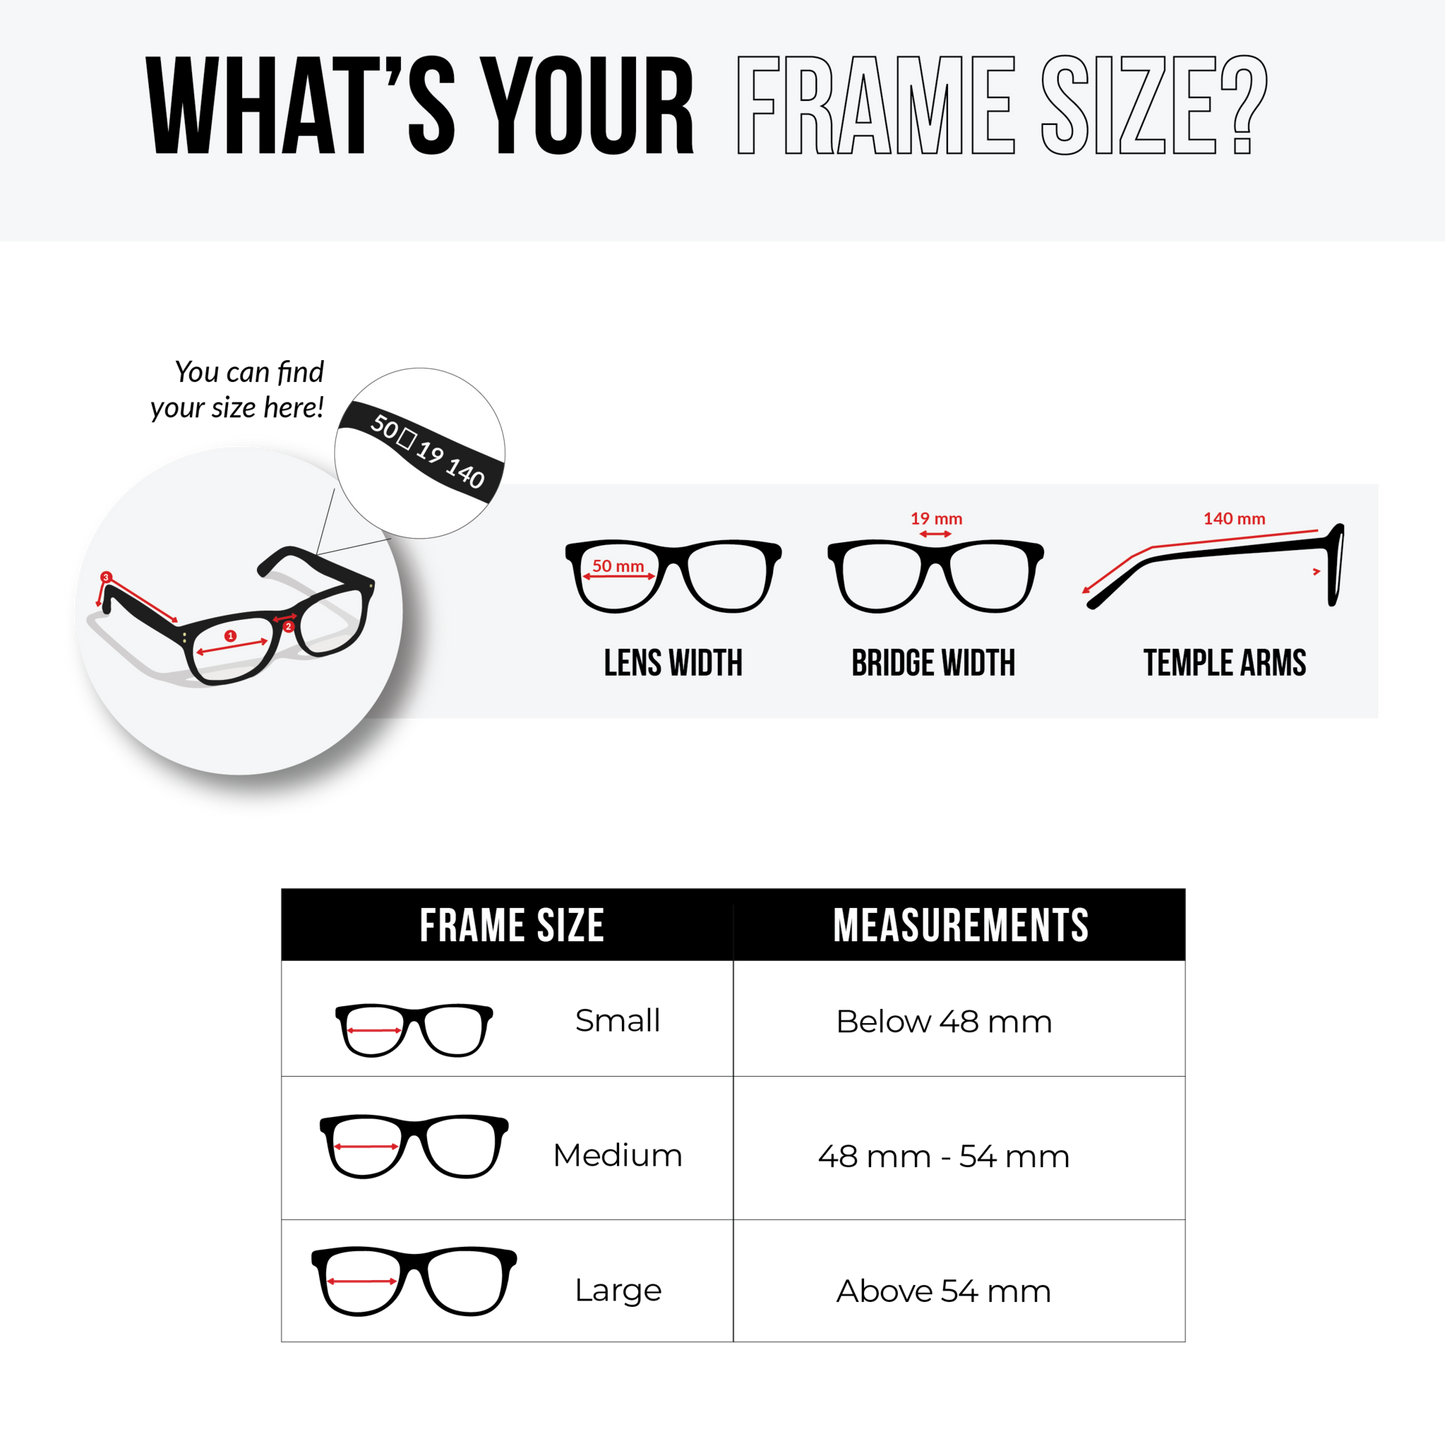 NS Luxury - 3265 - Black - Eyeglasses